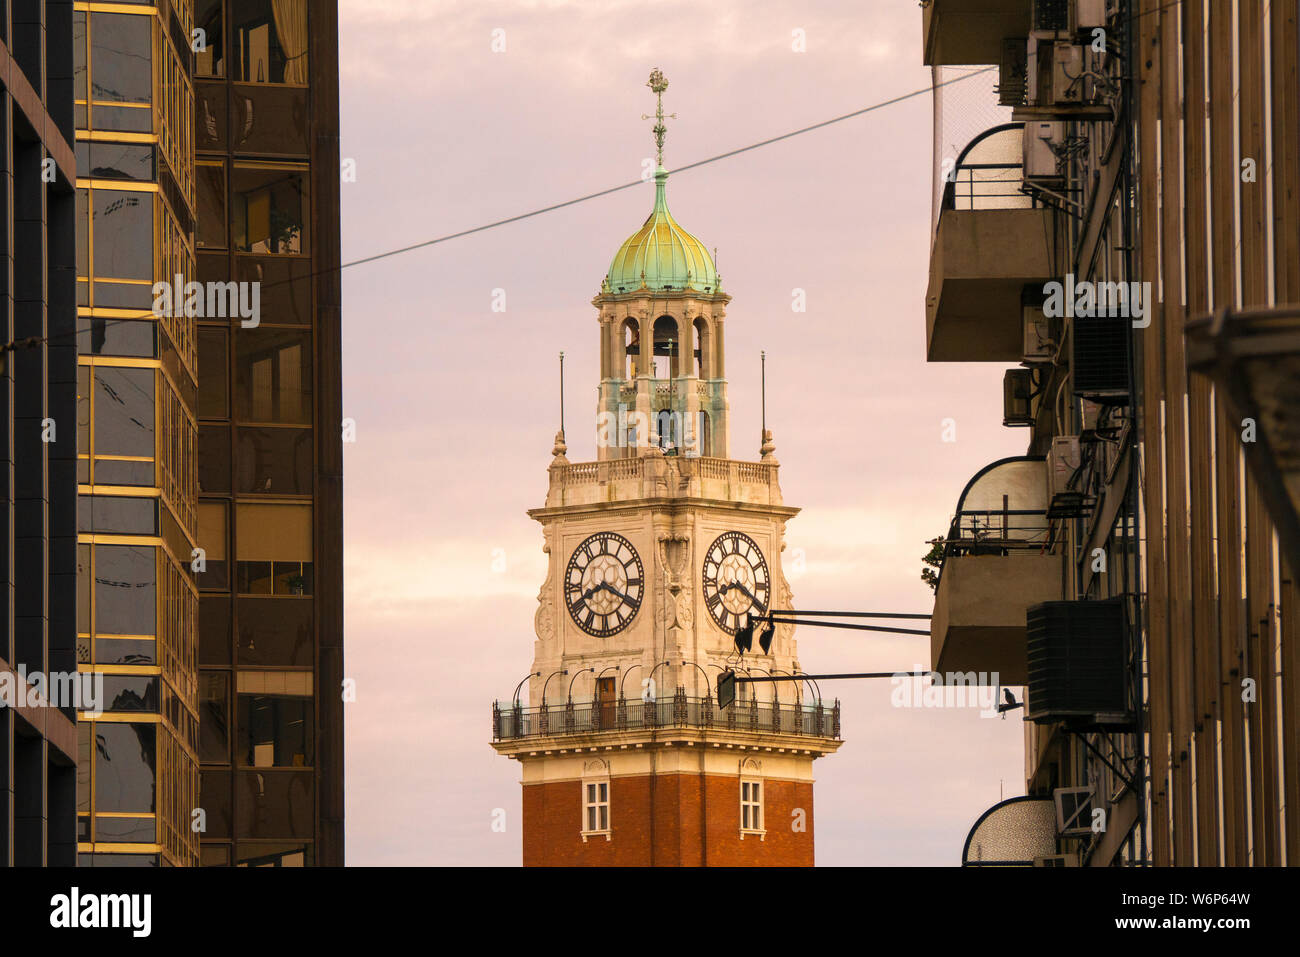 Monumentalen Turm auch als der Turm des Englischen in der Nähe von Retiro, Buenos Aires, Argentinien bekannt. Stockfoto